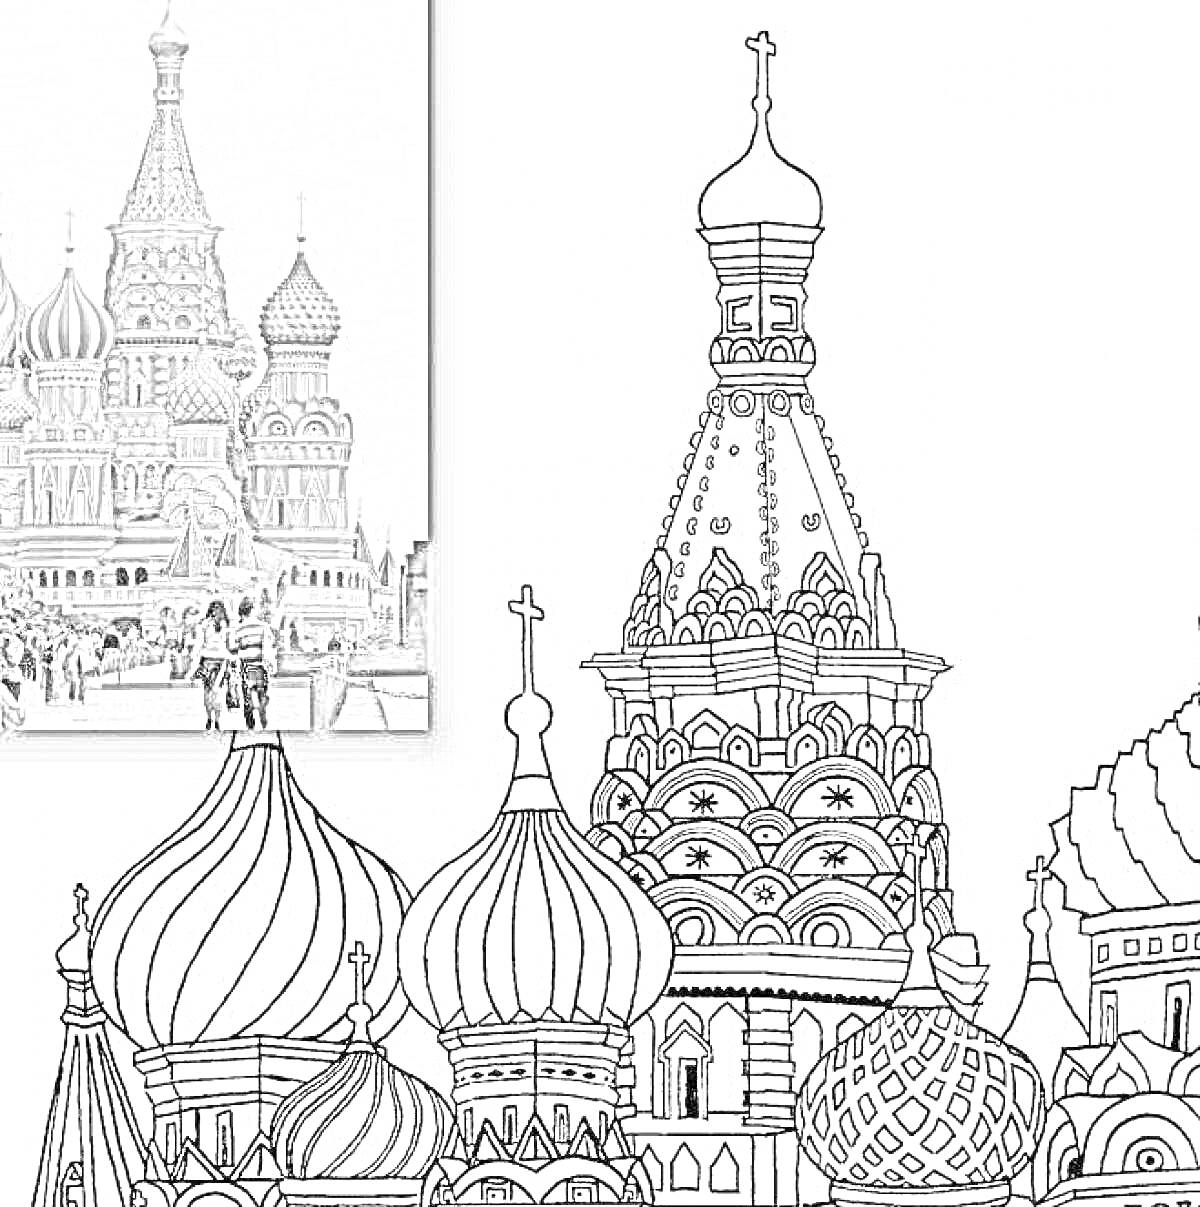 Раскраска Раскраска храма Василия Блаженного с видом на один из соборов и окружение.